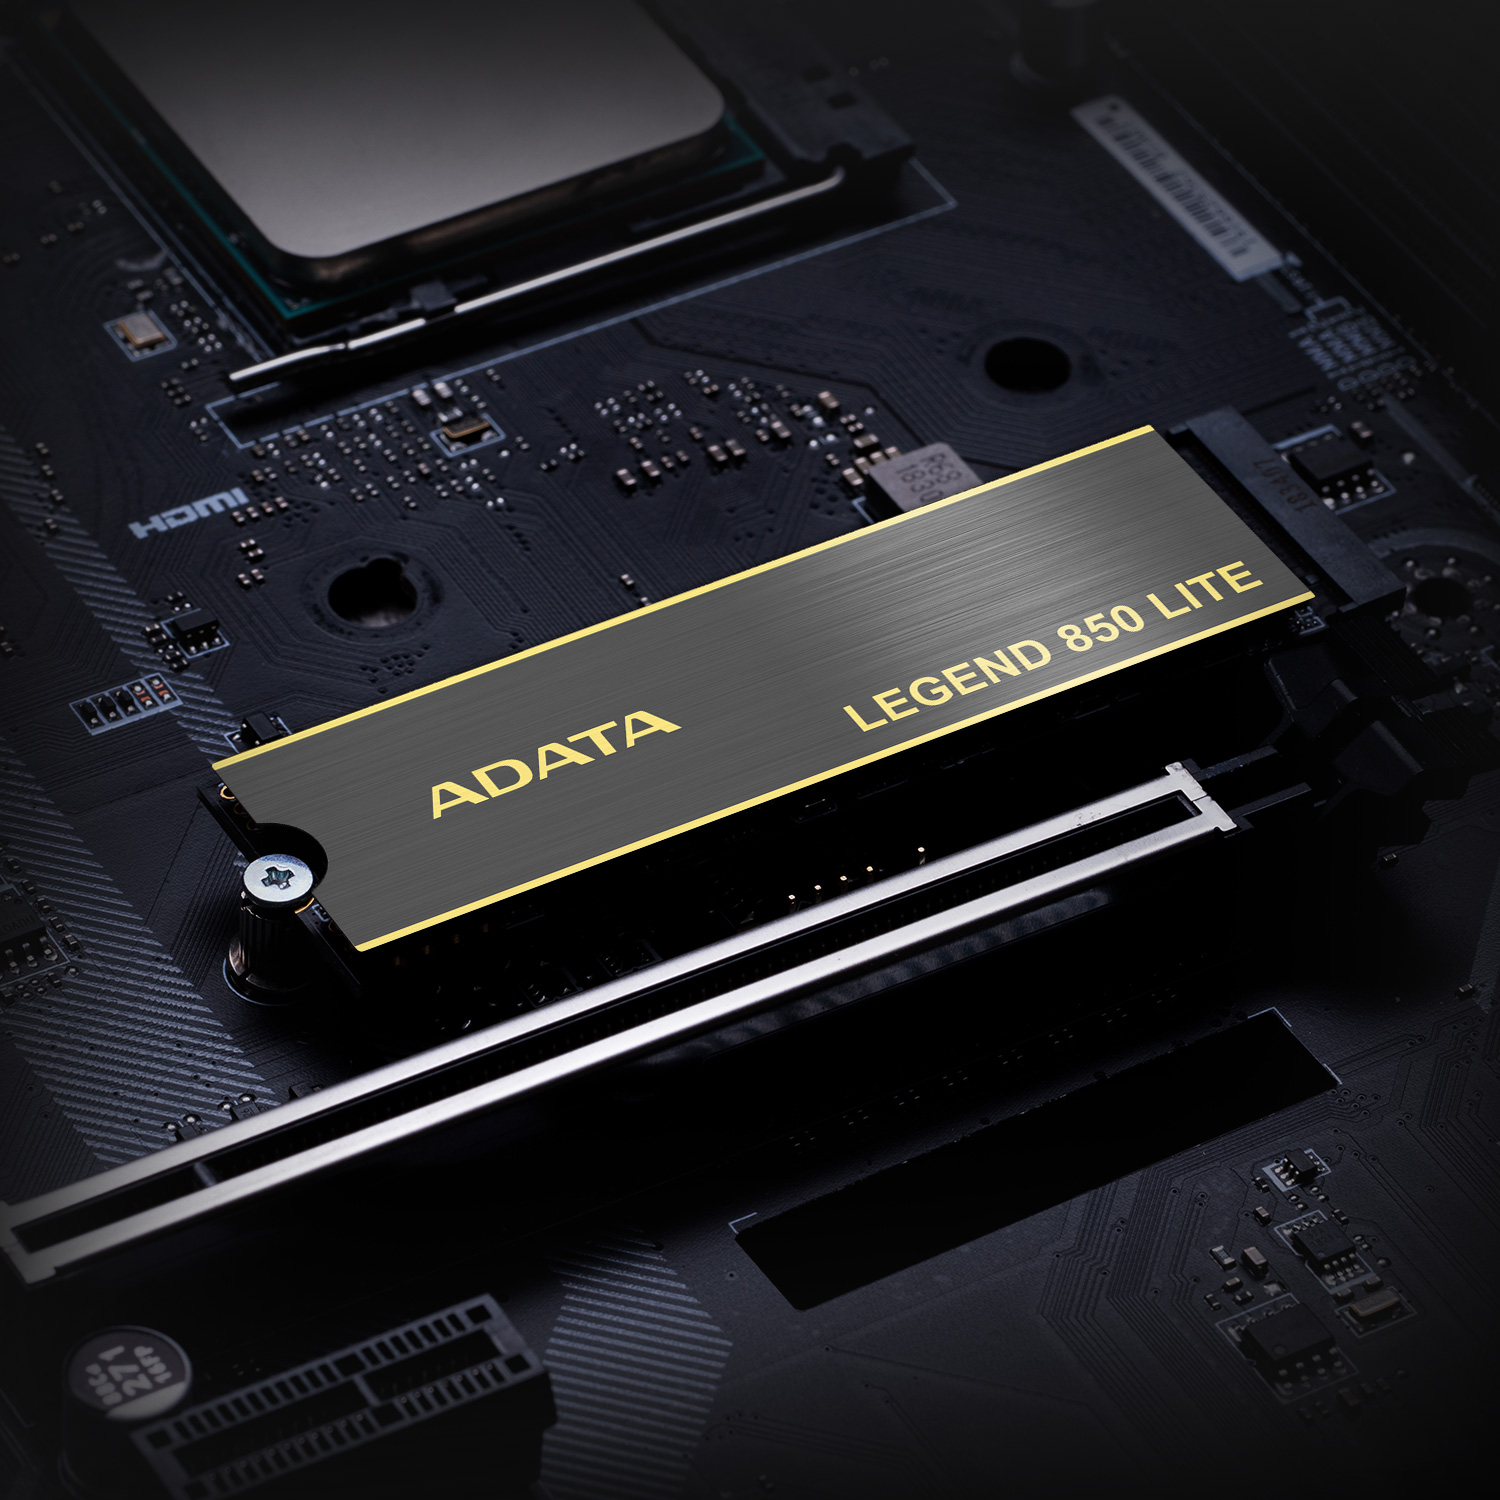 حافظه اس اس دی ADATA Legend 850 Lite 500GB - for PS5-7